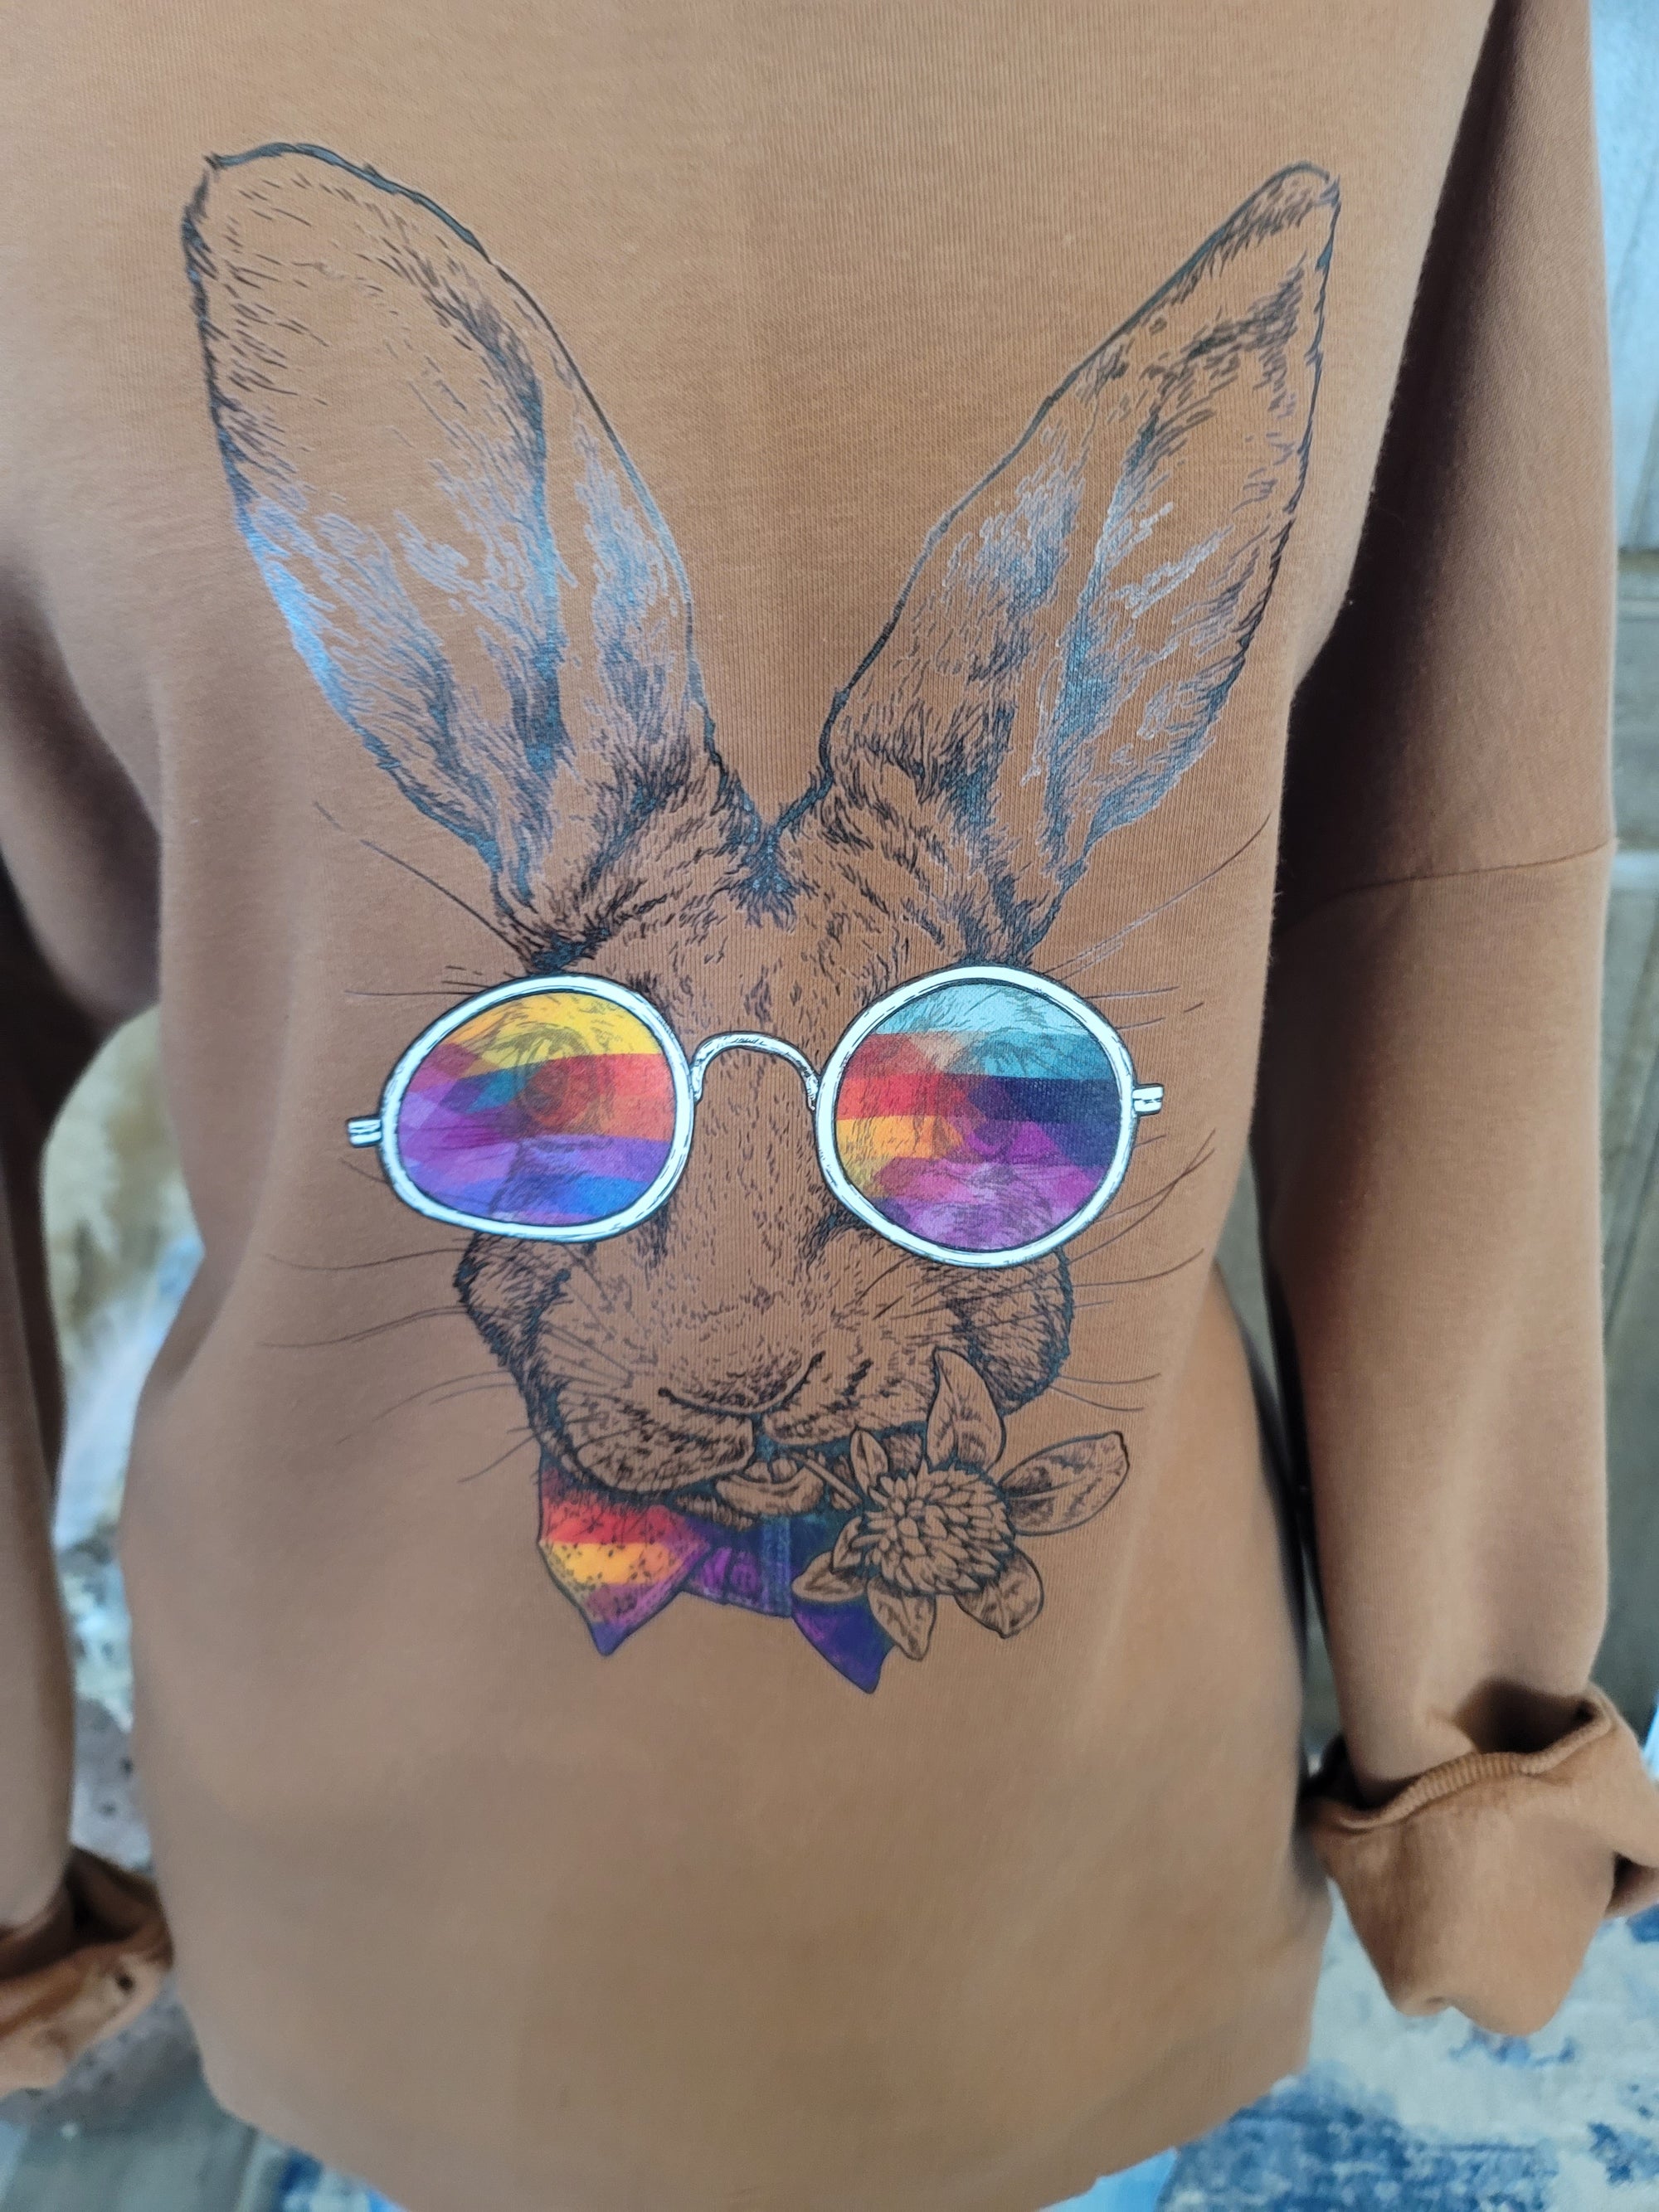 Bunny Sweatshirt